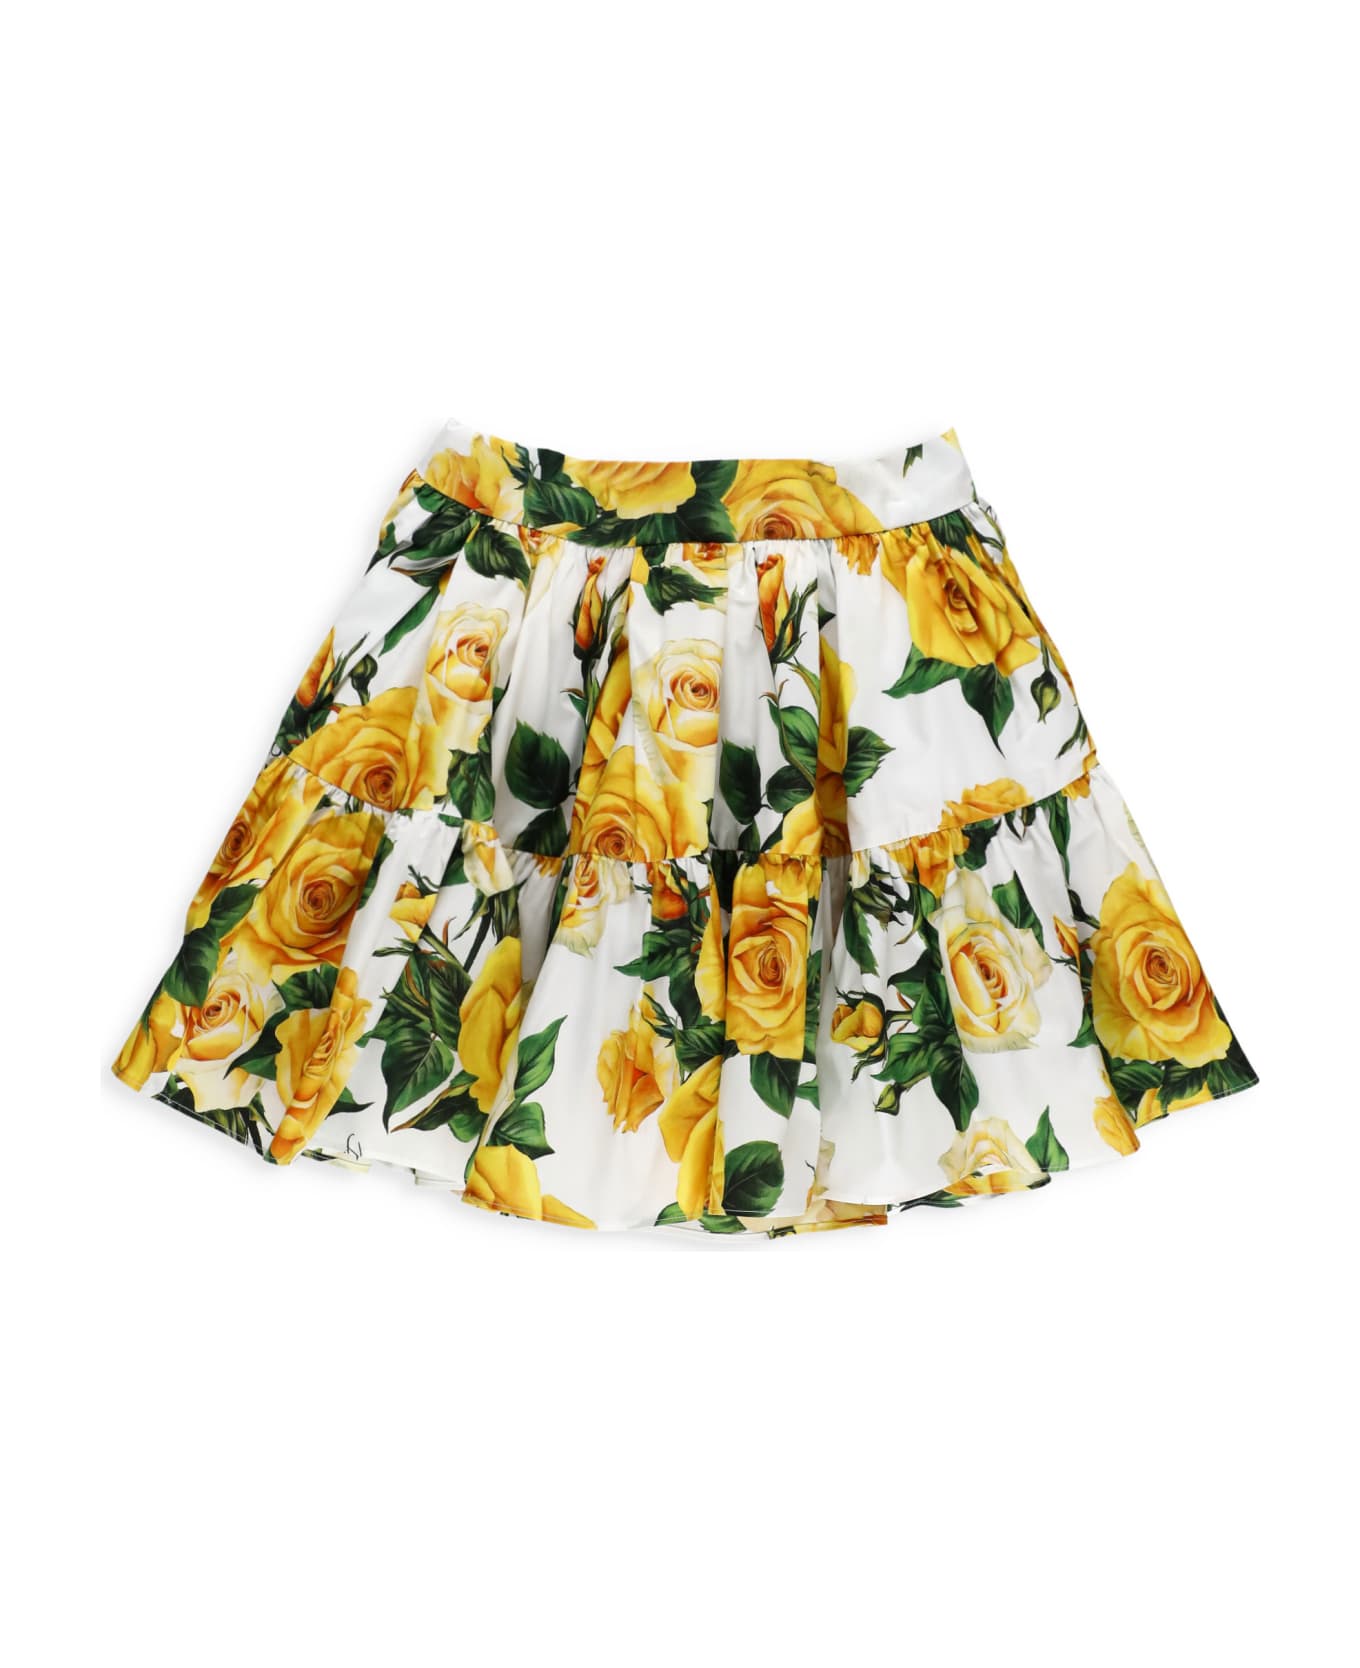 Dolce & Gabbana Flowering Skirt - White